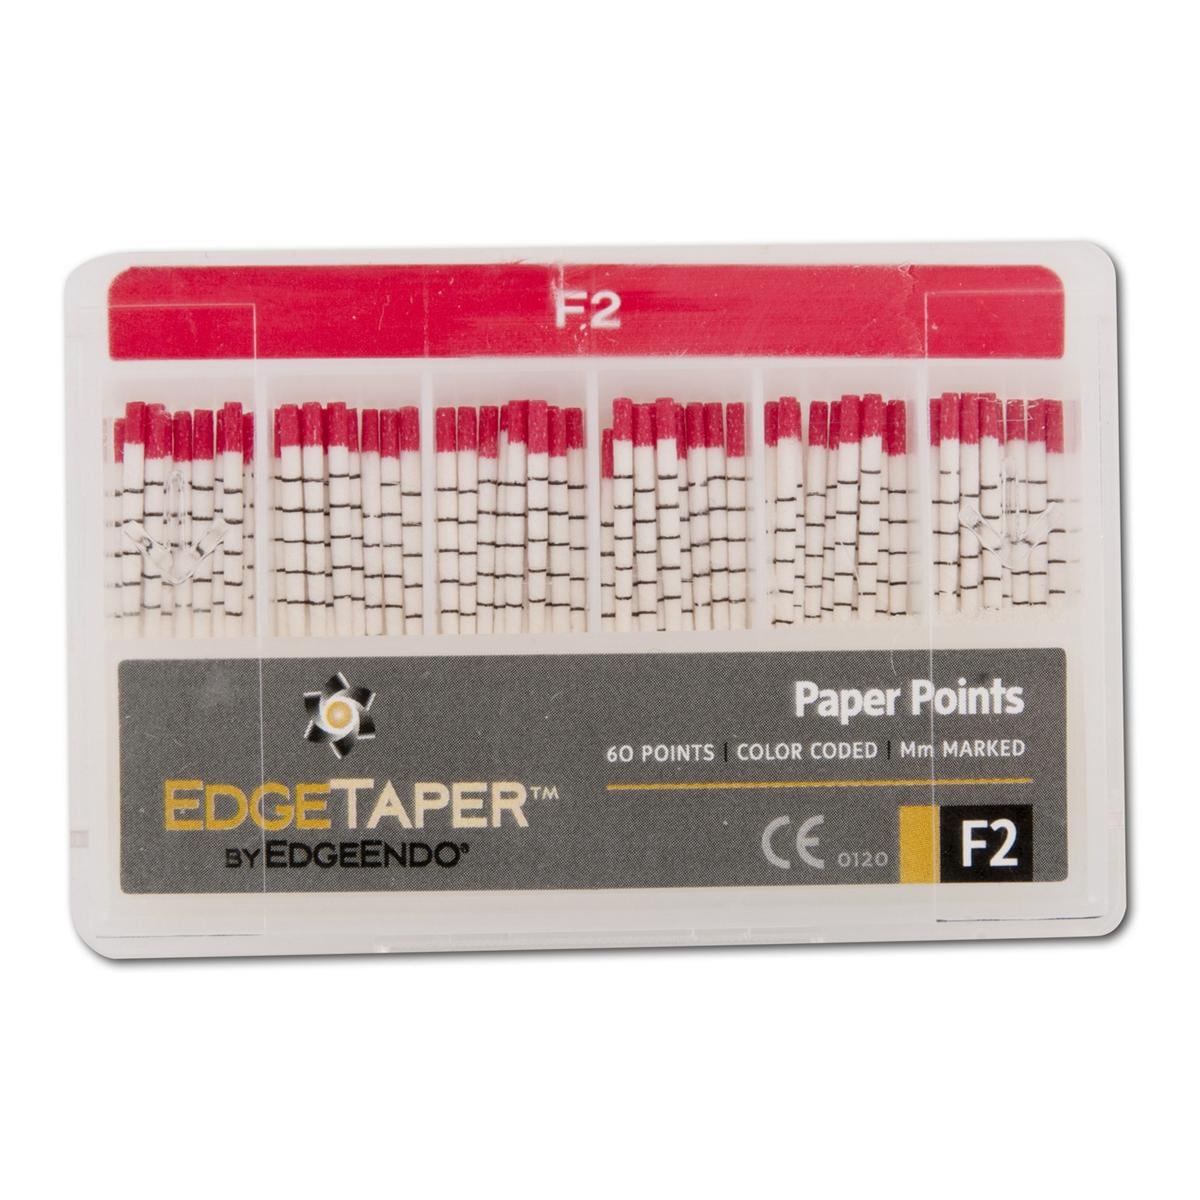 EdgeTaper Papierspitzen - Standardpackung - Größe F2, Packung 60 Stück